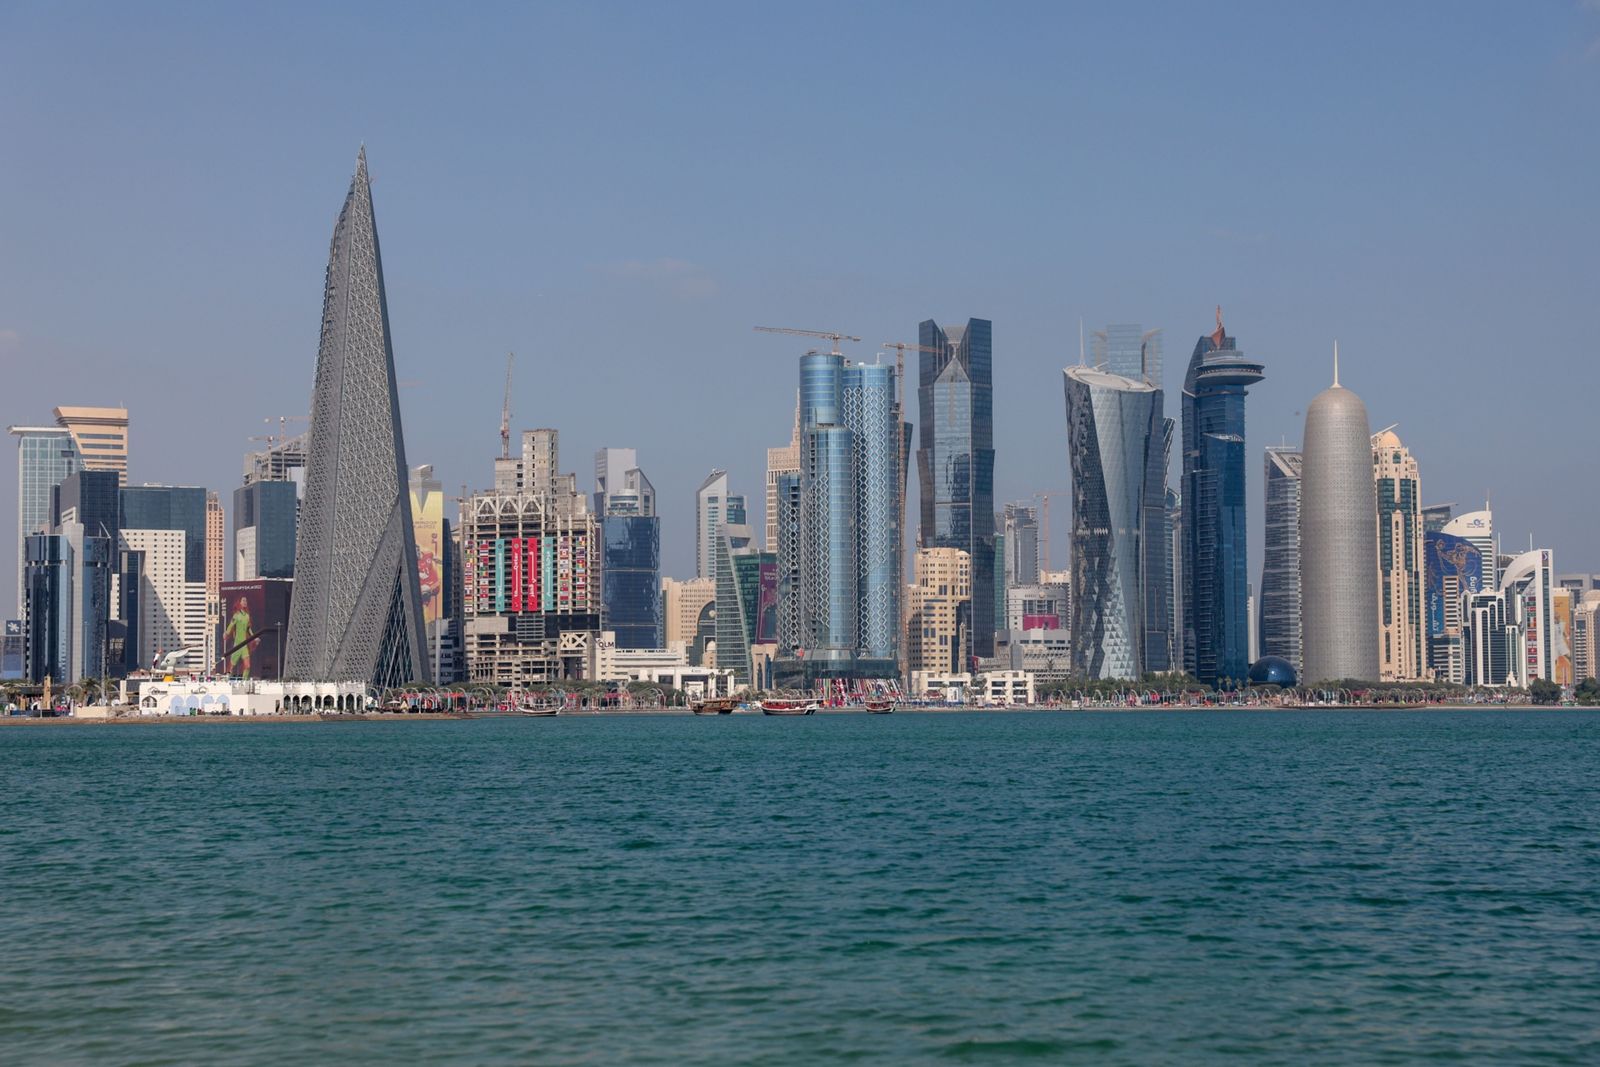 ماذا تفعل قطر بإرث كلفها 300 مليار دولار لتنظيم كأس العالم؟" width="252" height="168" loading="lazy